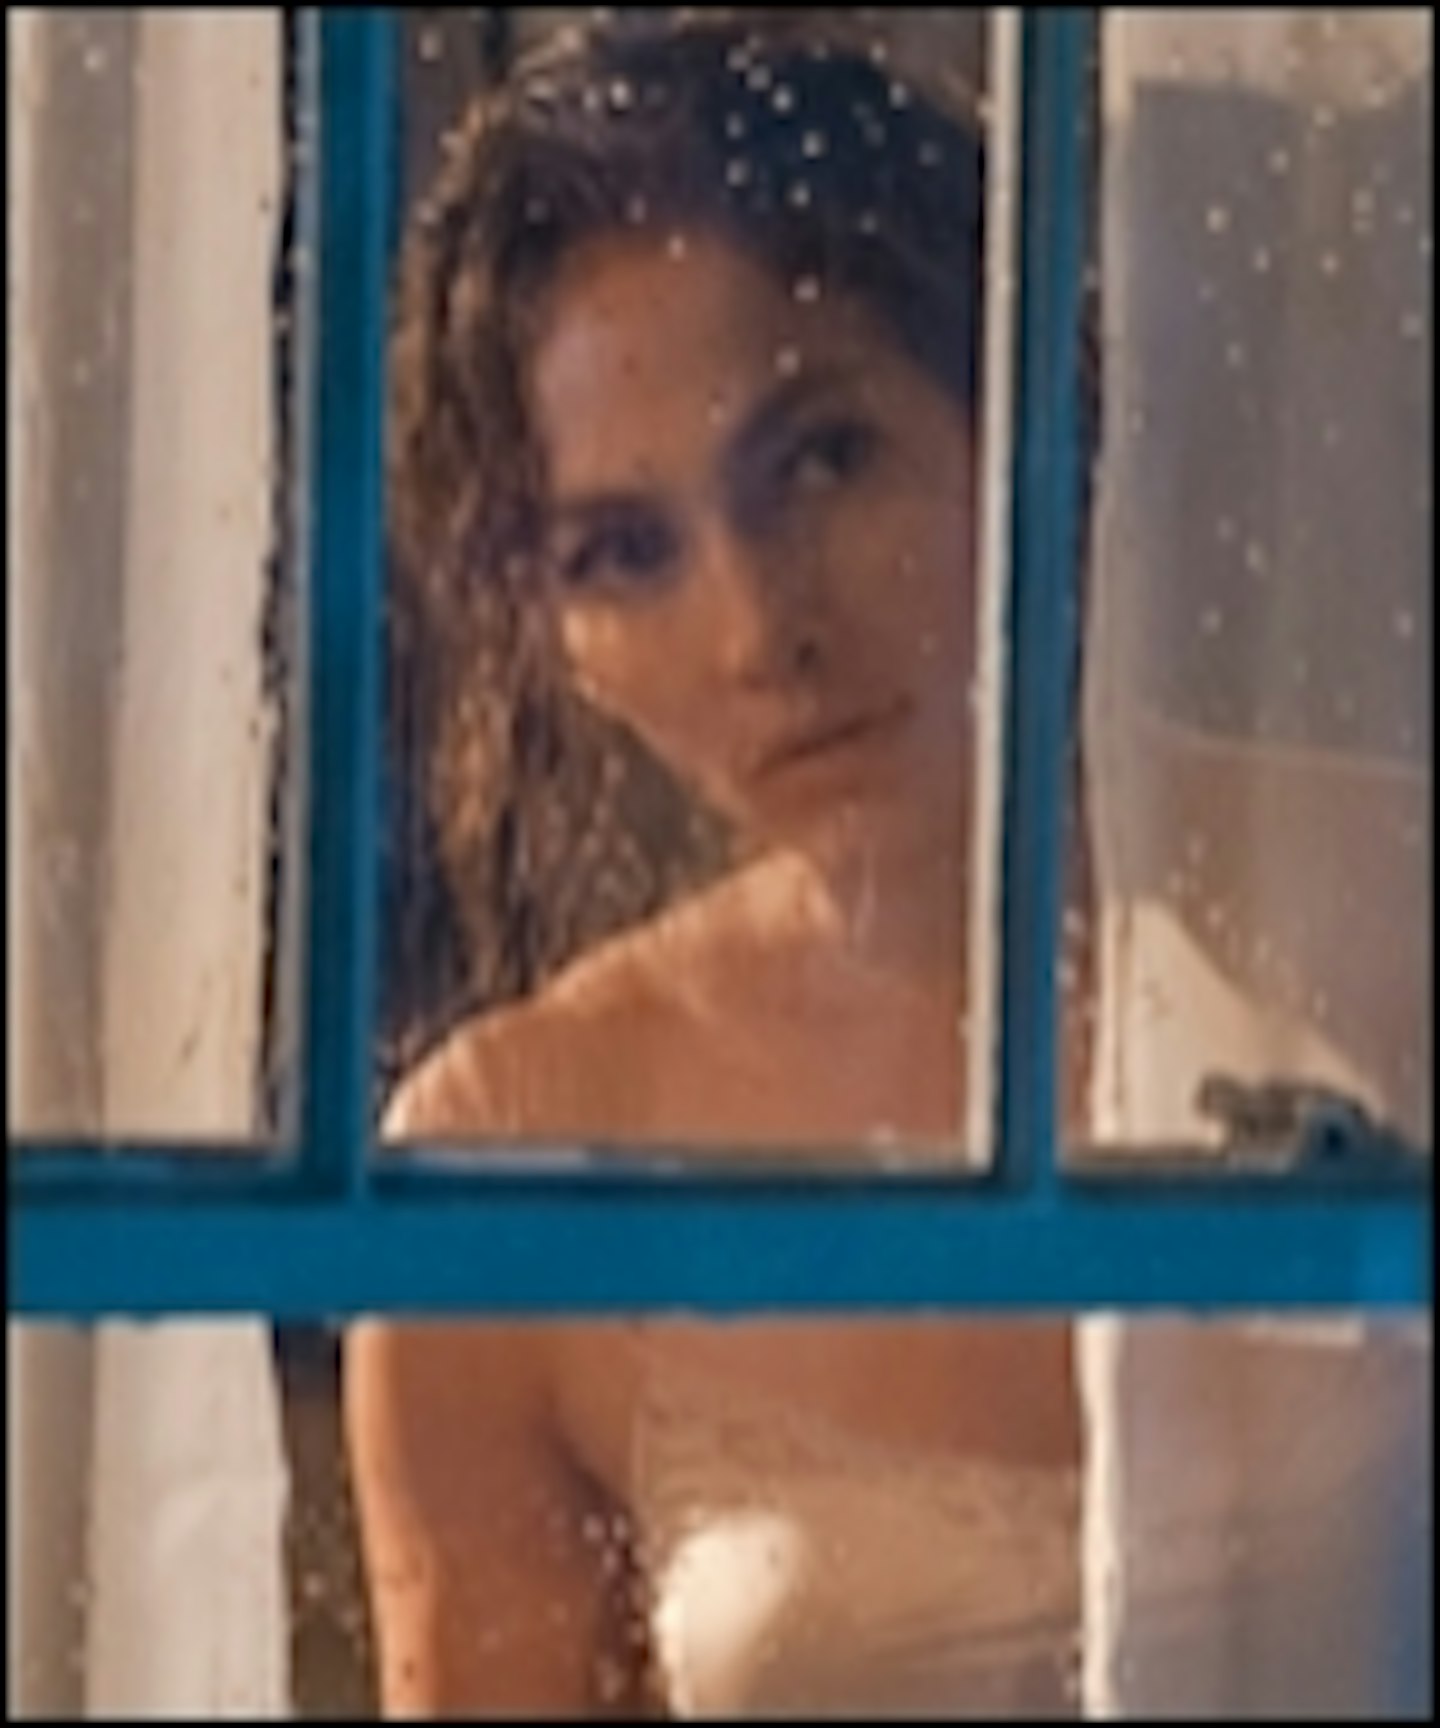 Jennifer Lopez Has Trouble In The Boy Next Door Trailer